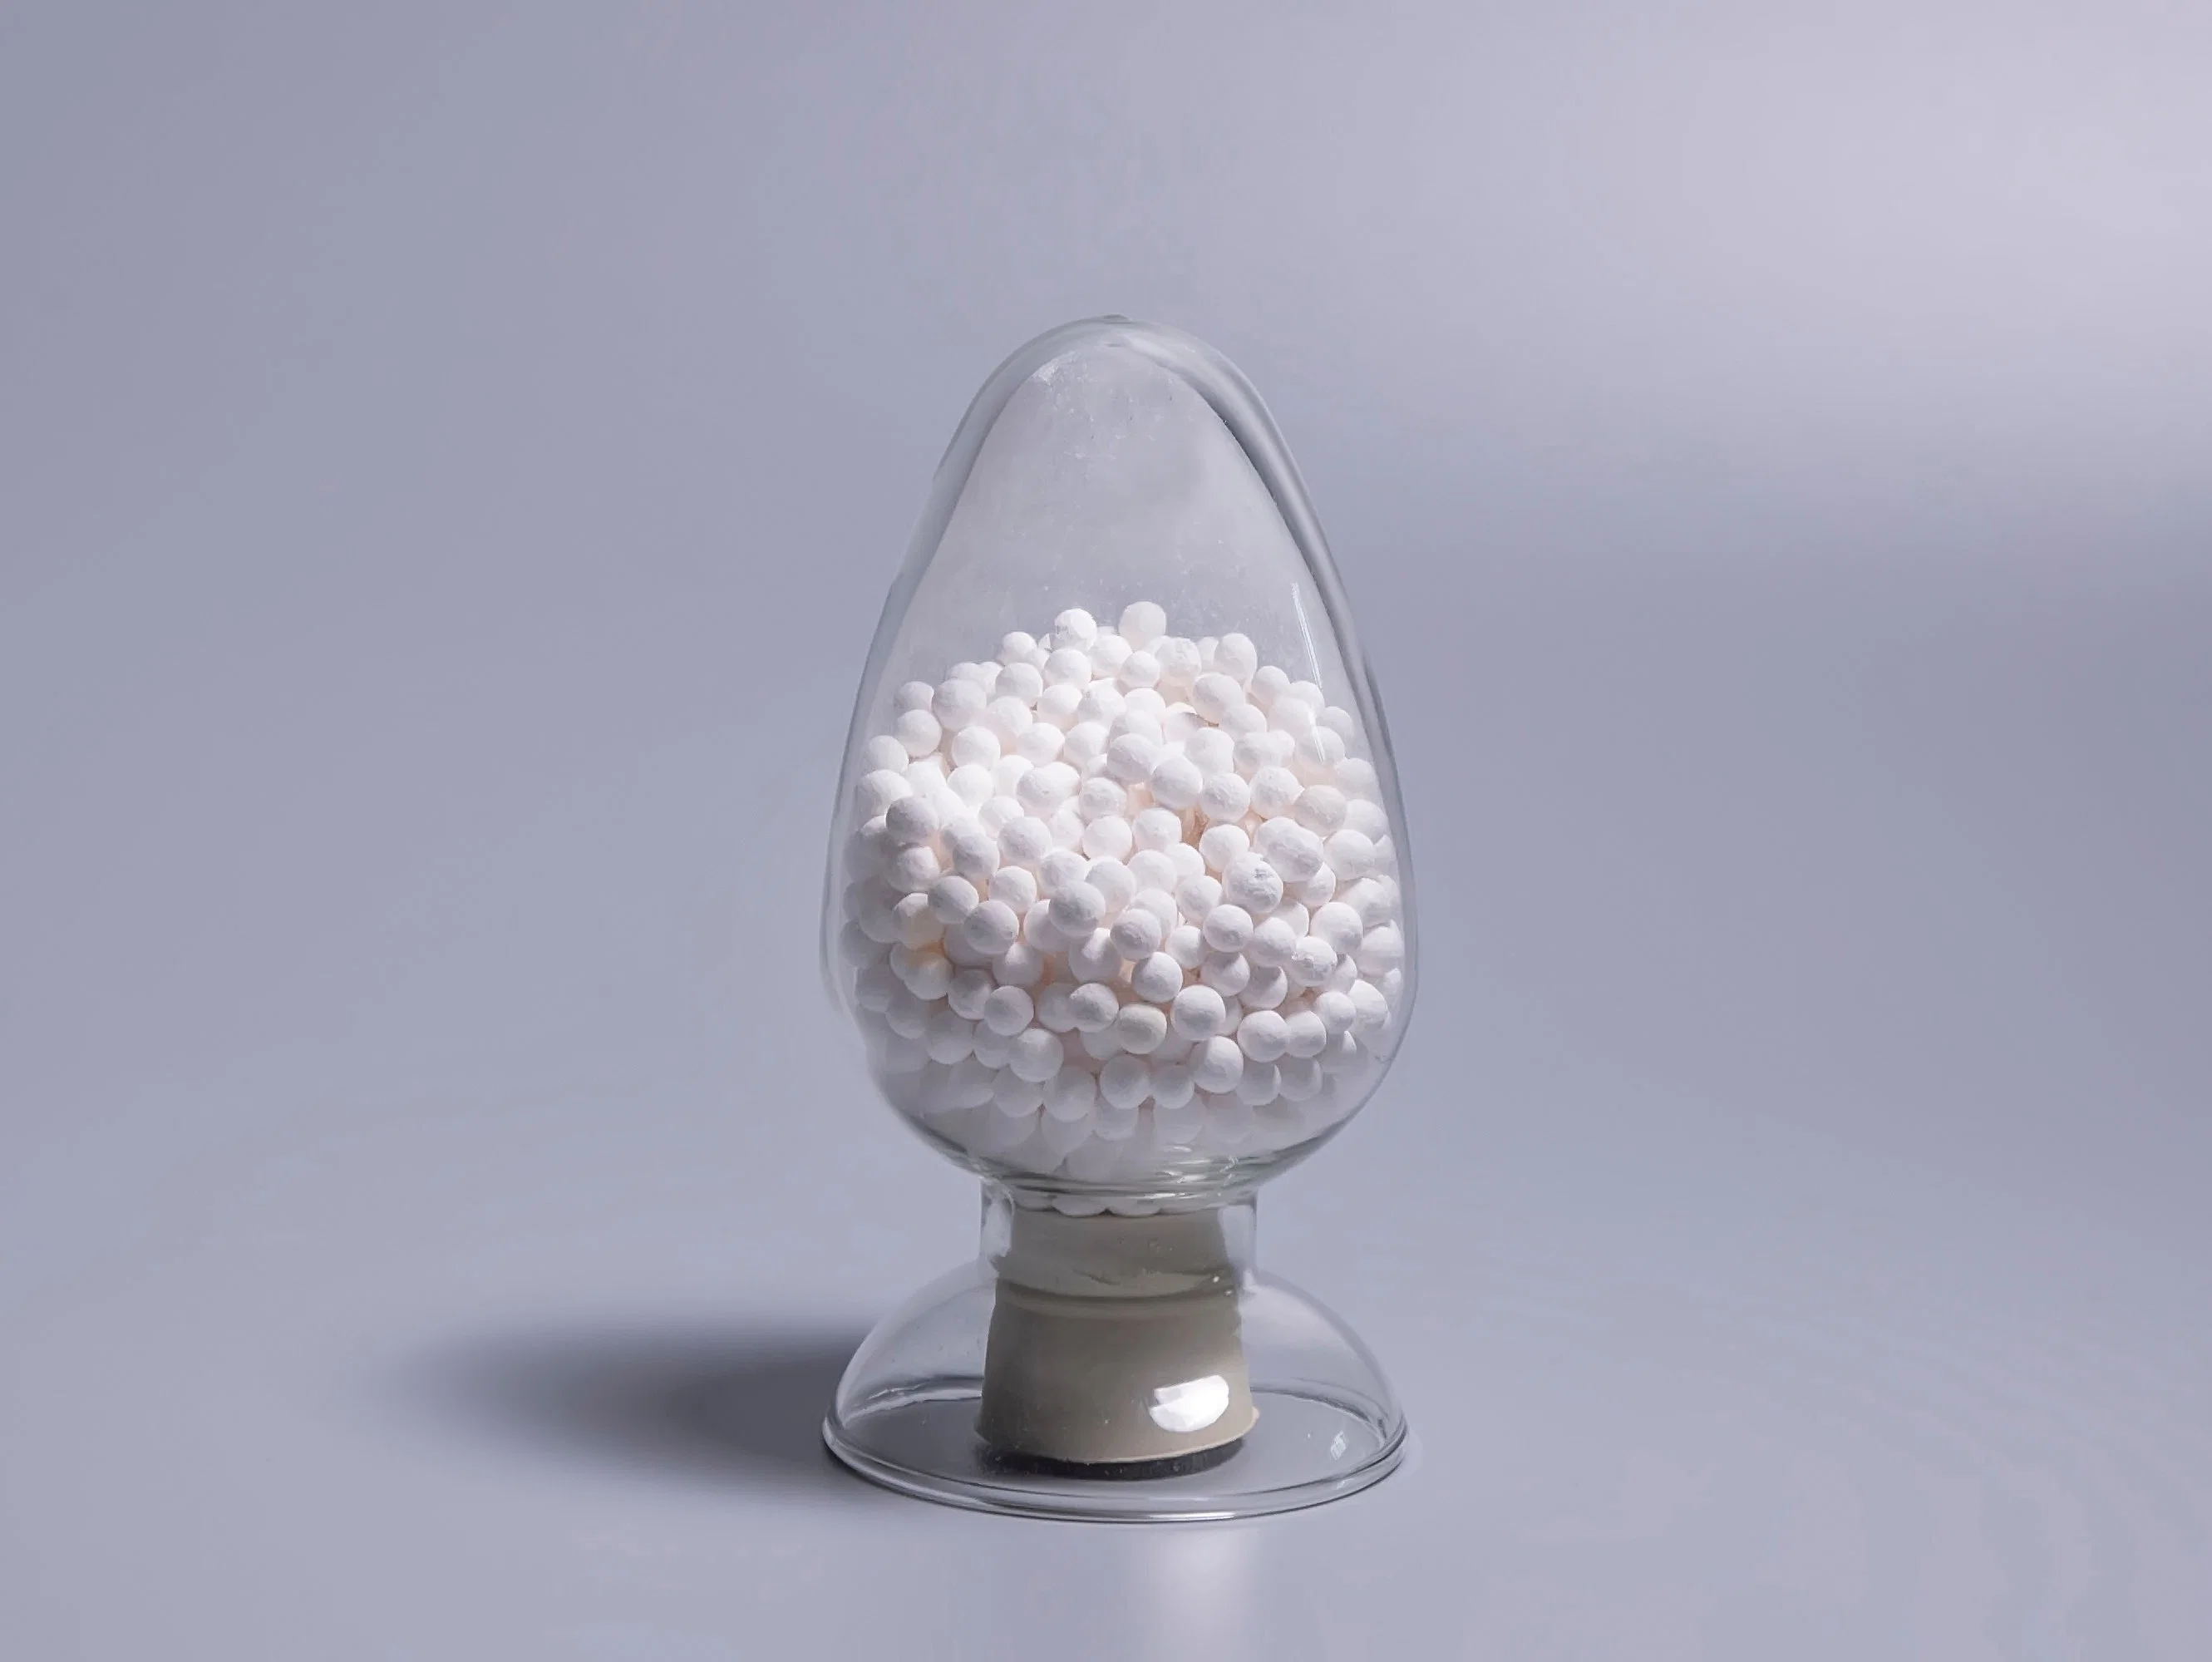 Активированный алюминиевый шар для каталитического нейтрализатора нефтехимии